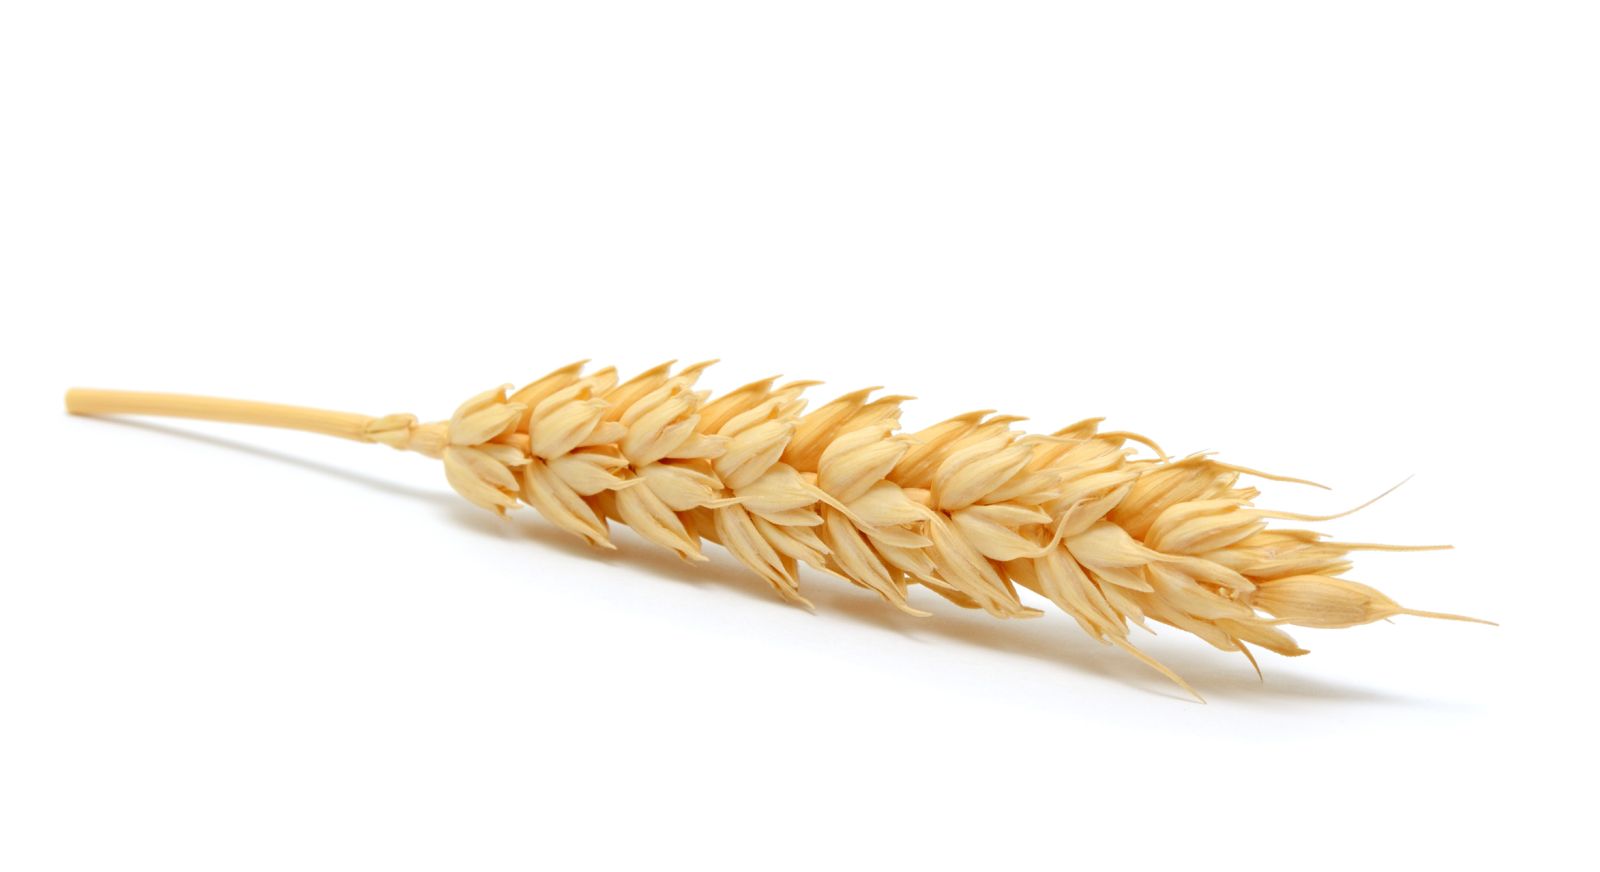 Single stalk of wheat on white background by texturis via iStock